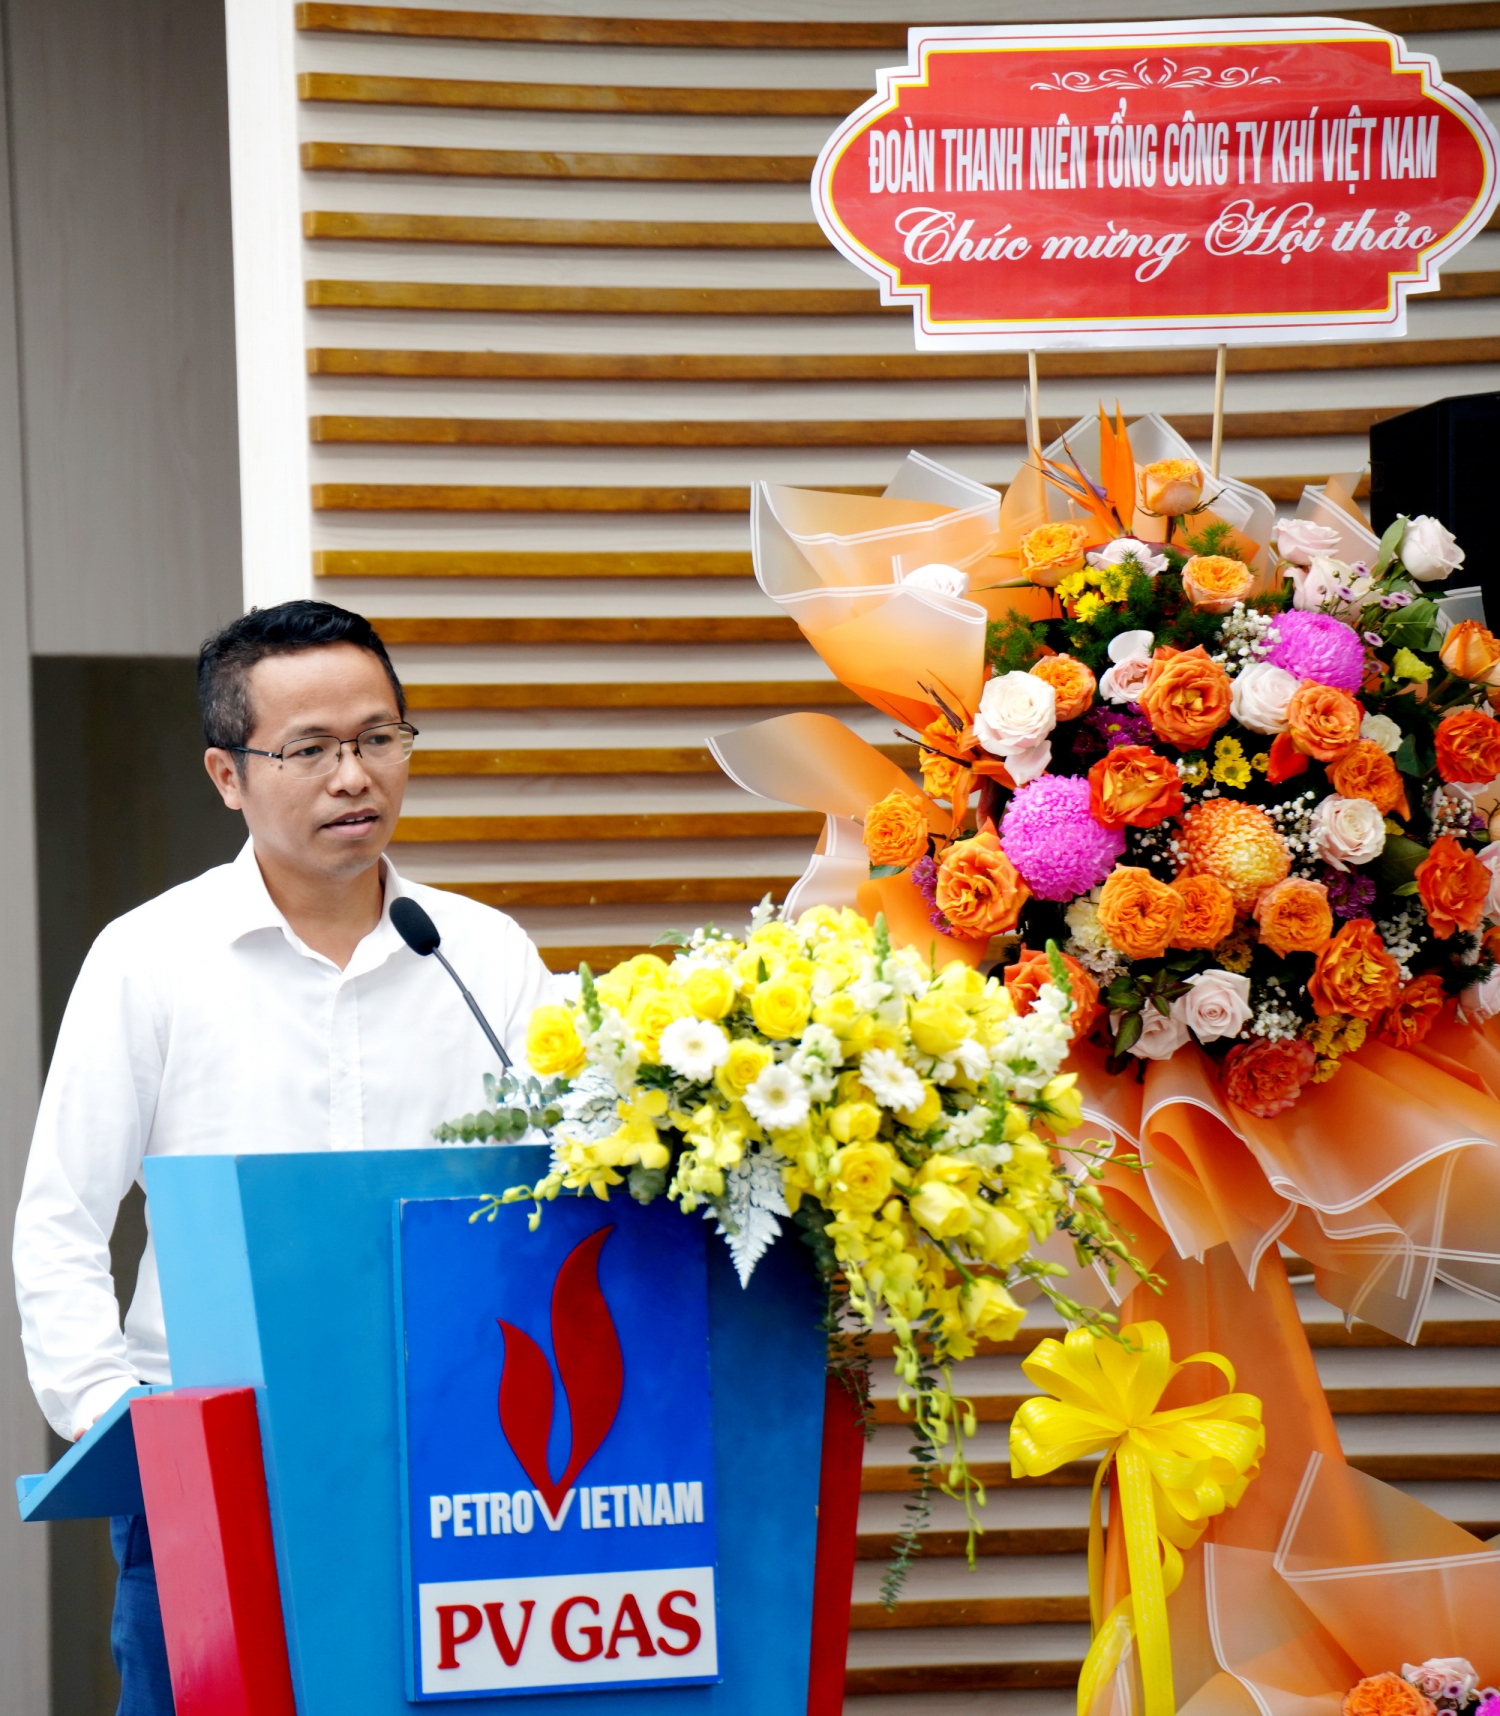 Đồng chí Nguyễn Văn Bé Ba – Bí thư Đảng ủy, Giám đốc KCM đánh giá cao tầm quan trọng và giá trị kiến thức mà Hội thảo mang lại